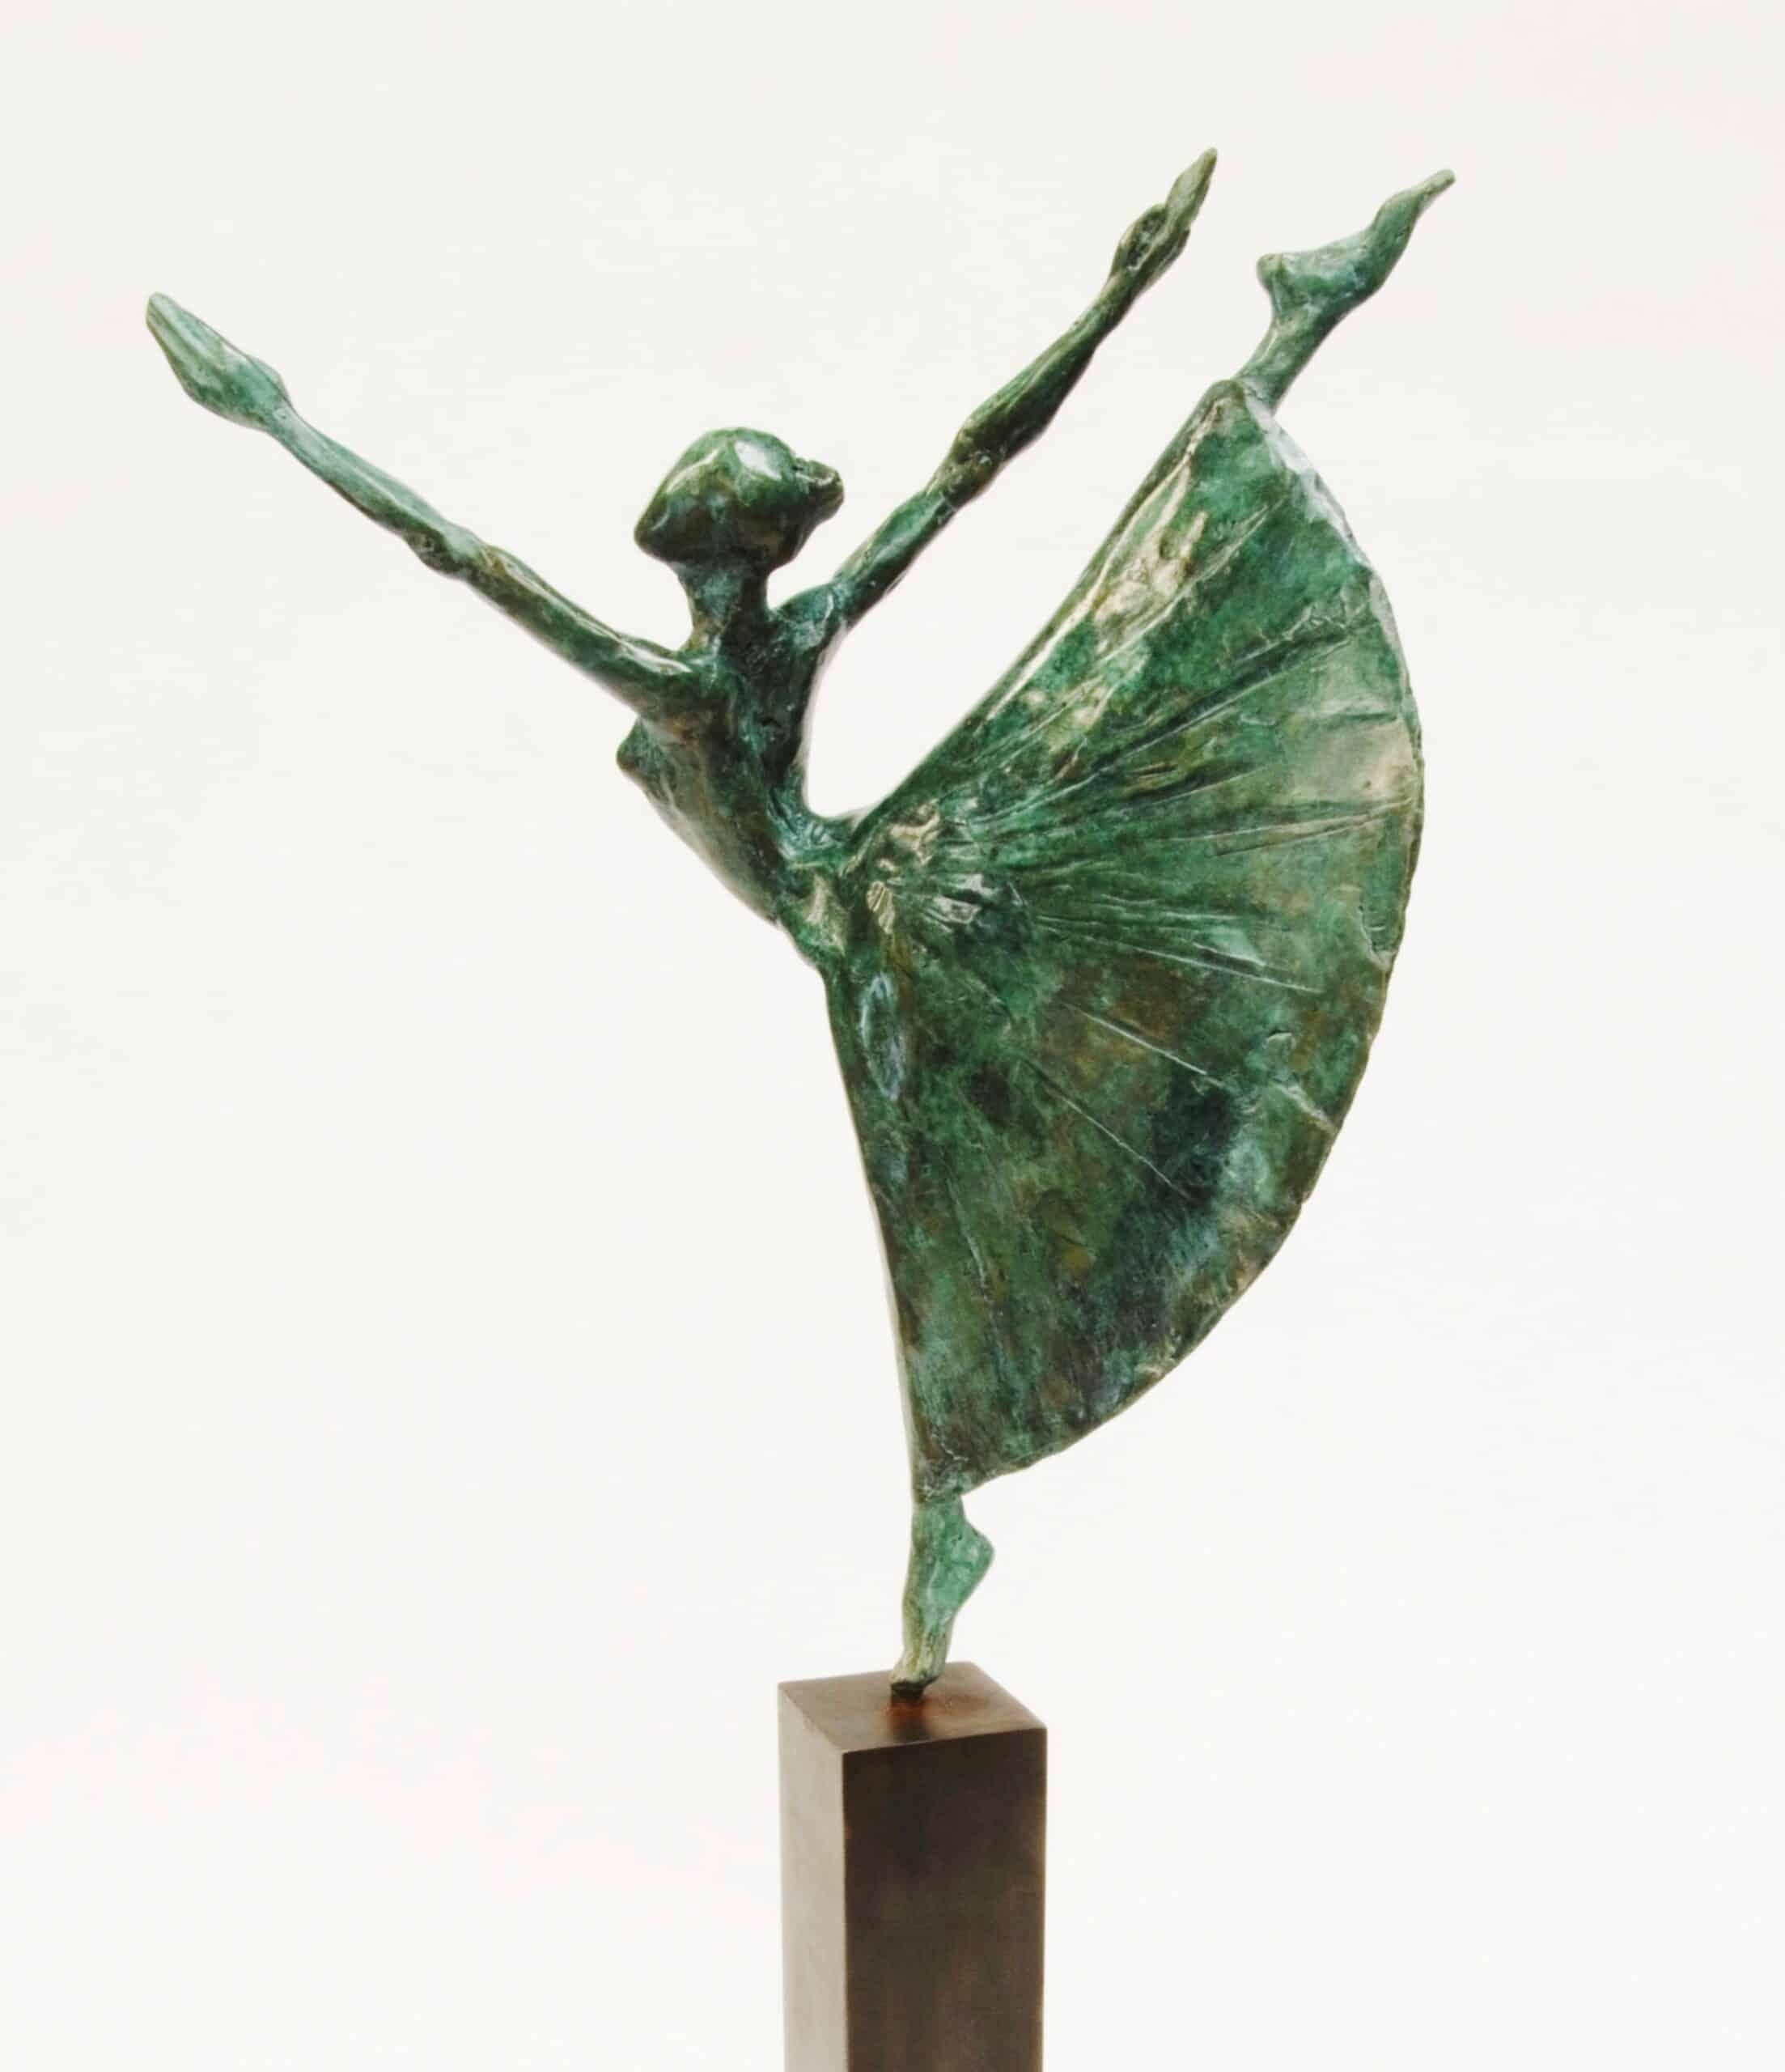 Dancer With Long Tutu ist eine Bronzeskulptur des zeitgenössischen Künstlers Yann Guillon mit den Maßen 25 × 15 × 8 cm (9,8 × 5,9 × 3,1 in). Höhe der Skulptur mit Metallsockel: 45 cm (17,7 Zoll). 
Die Skulptur ist signiert und nummeriert, gehört zu